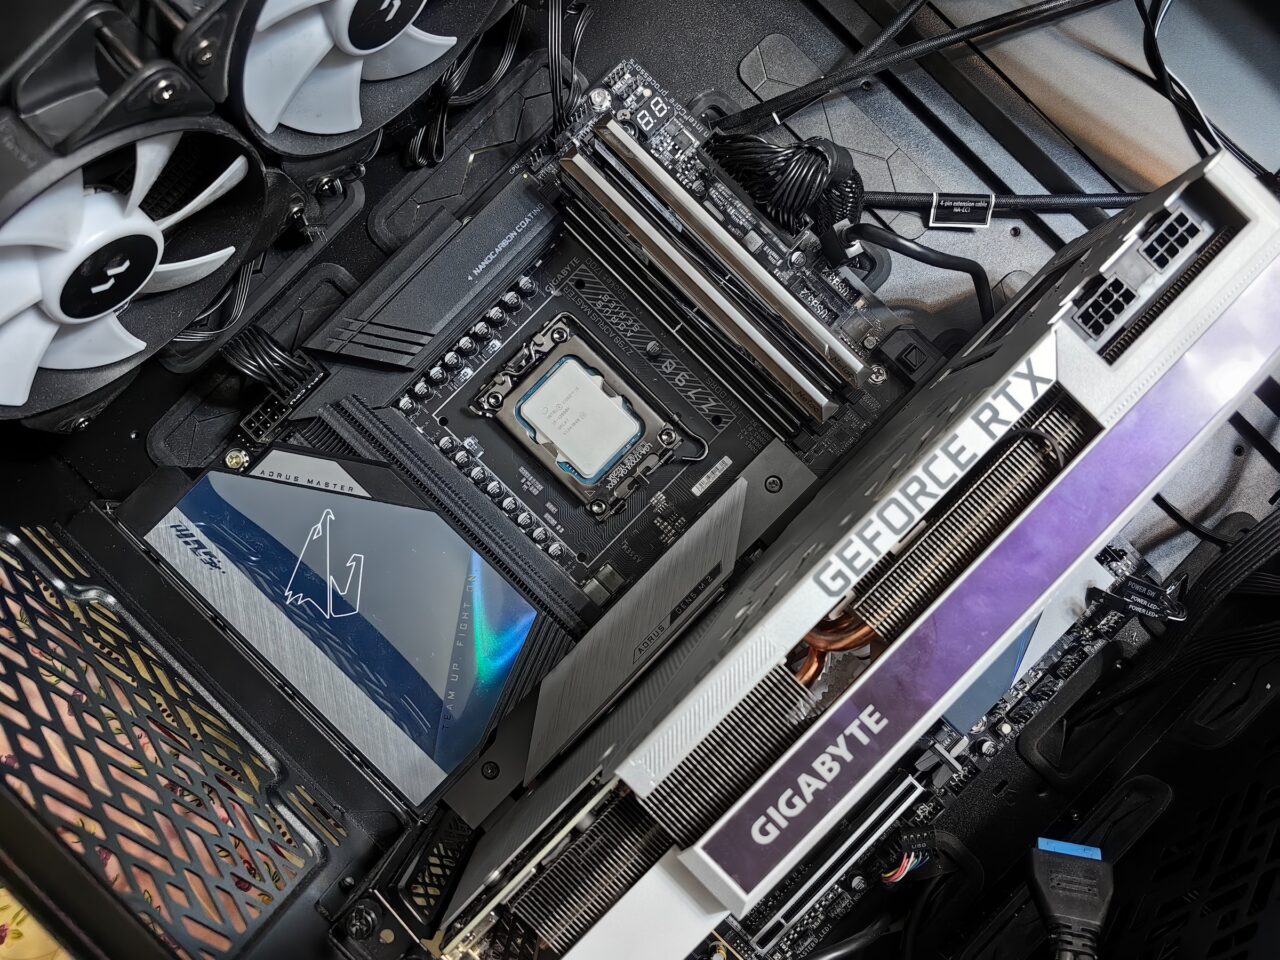 Wnętrze komputera z widocznym procesorem, częścią chłodzenia wodnego, kartą graficzną GeForce RTX, pamięcią RAM oraz innymi komponentami na płycie głównej.